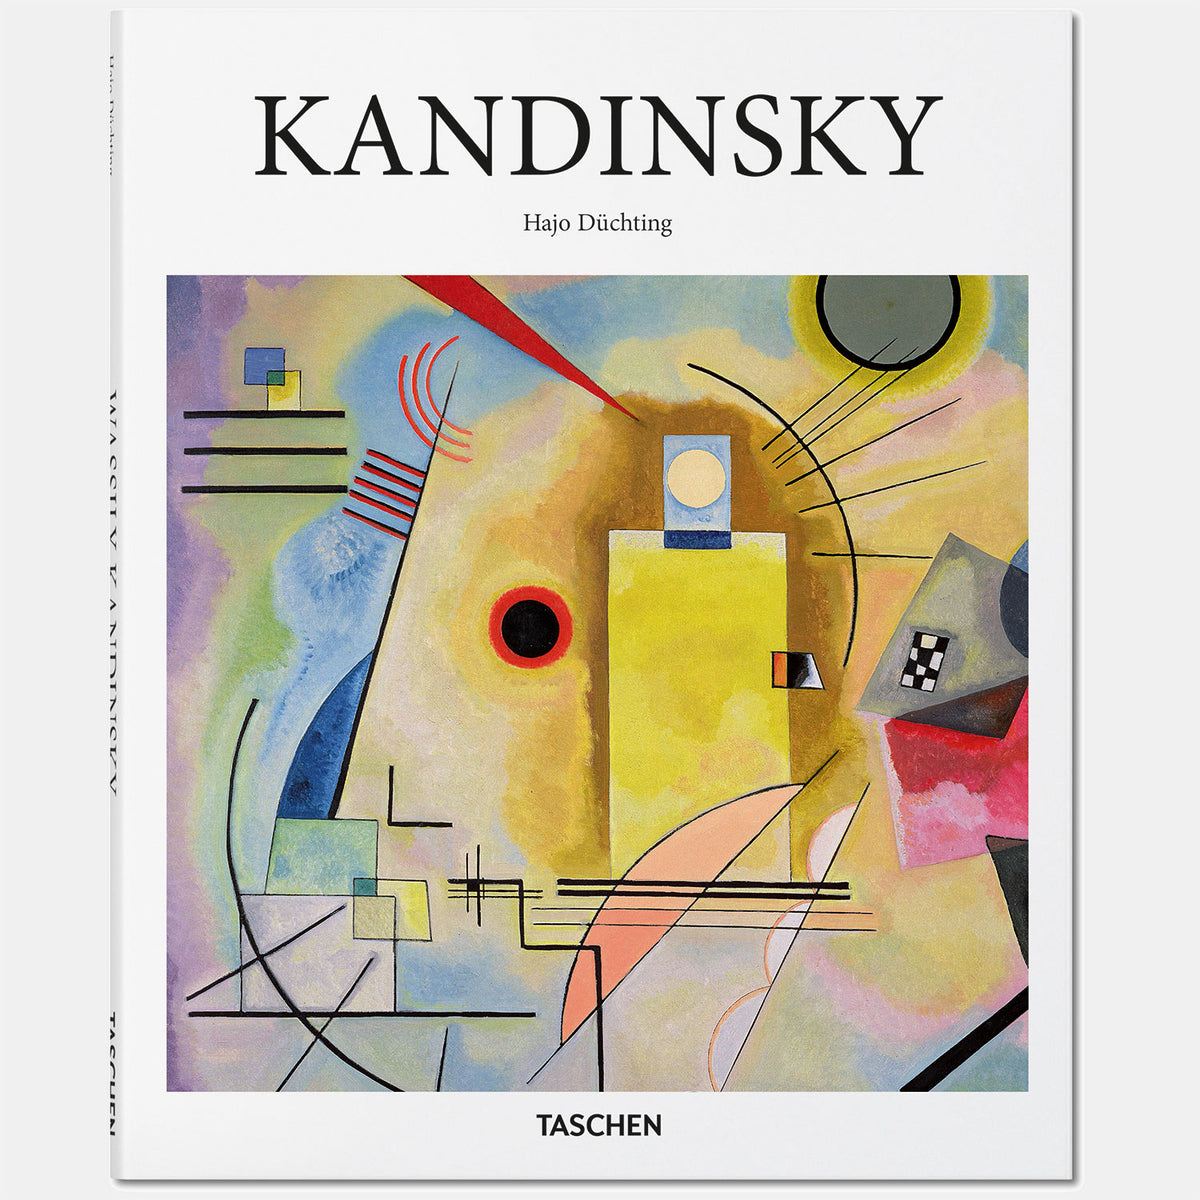 Kandinsky art and design book by Taschen